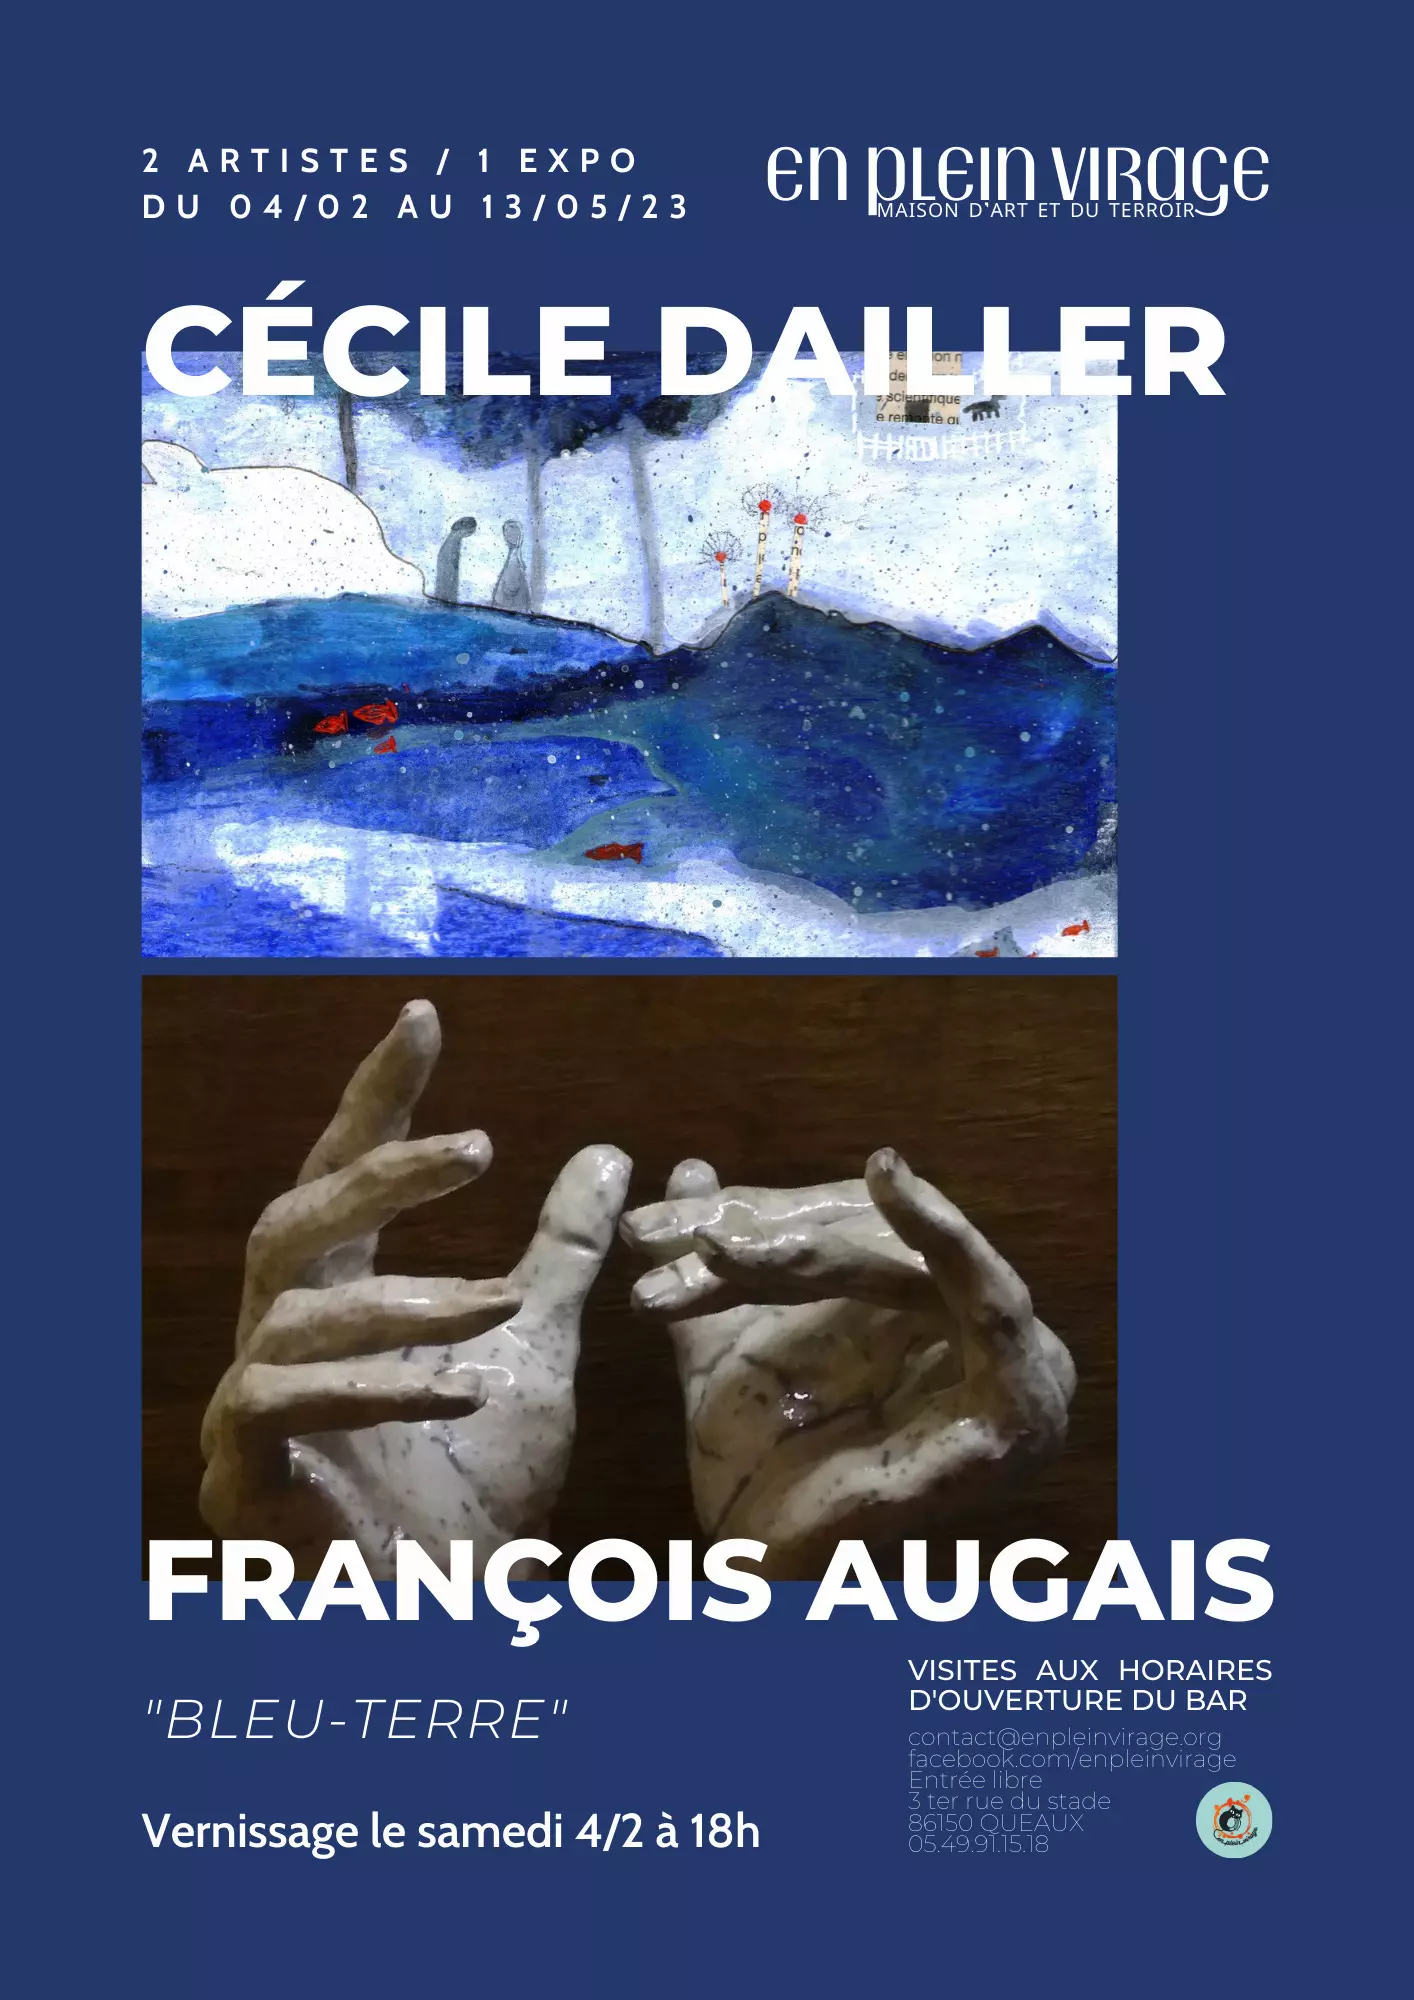 Expositions Cultures Arts-Exposition "Bleu-Terre" / Cécile Dailler & François Augais